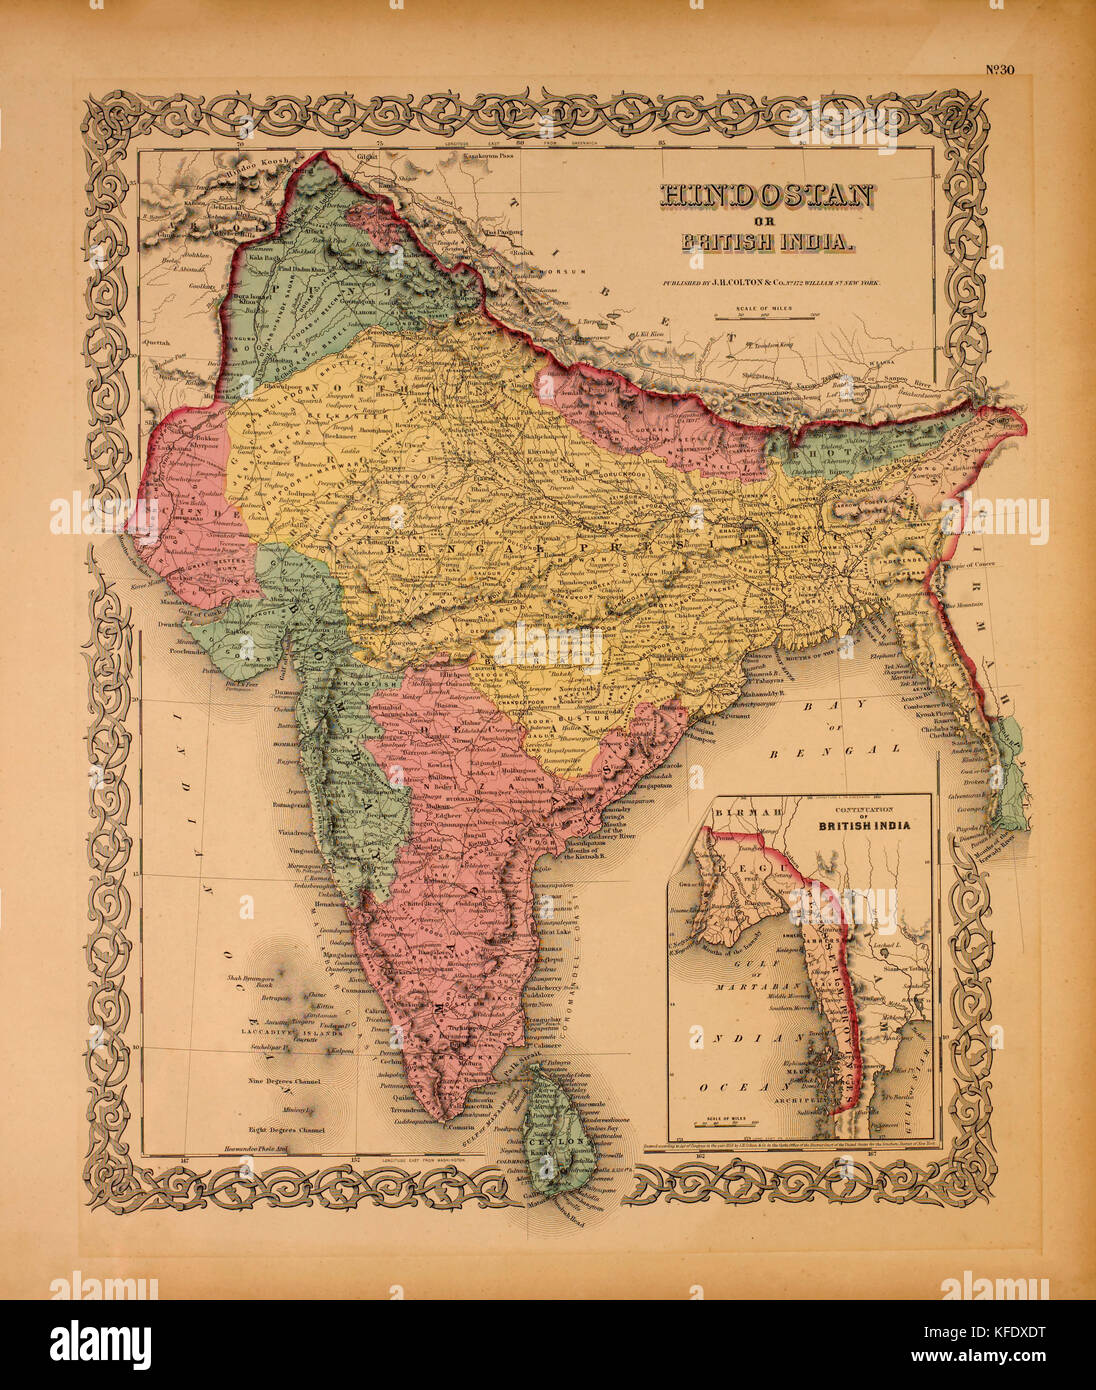 Karte von hindostan oder britische Indien, 1855 Stockfoto